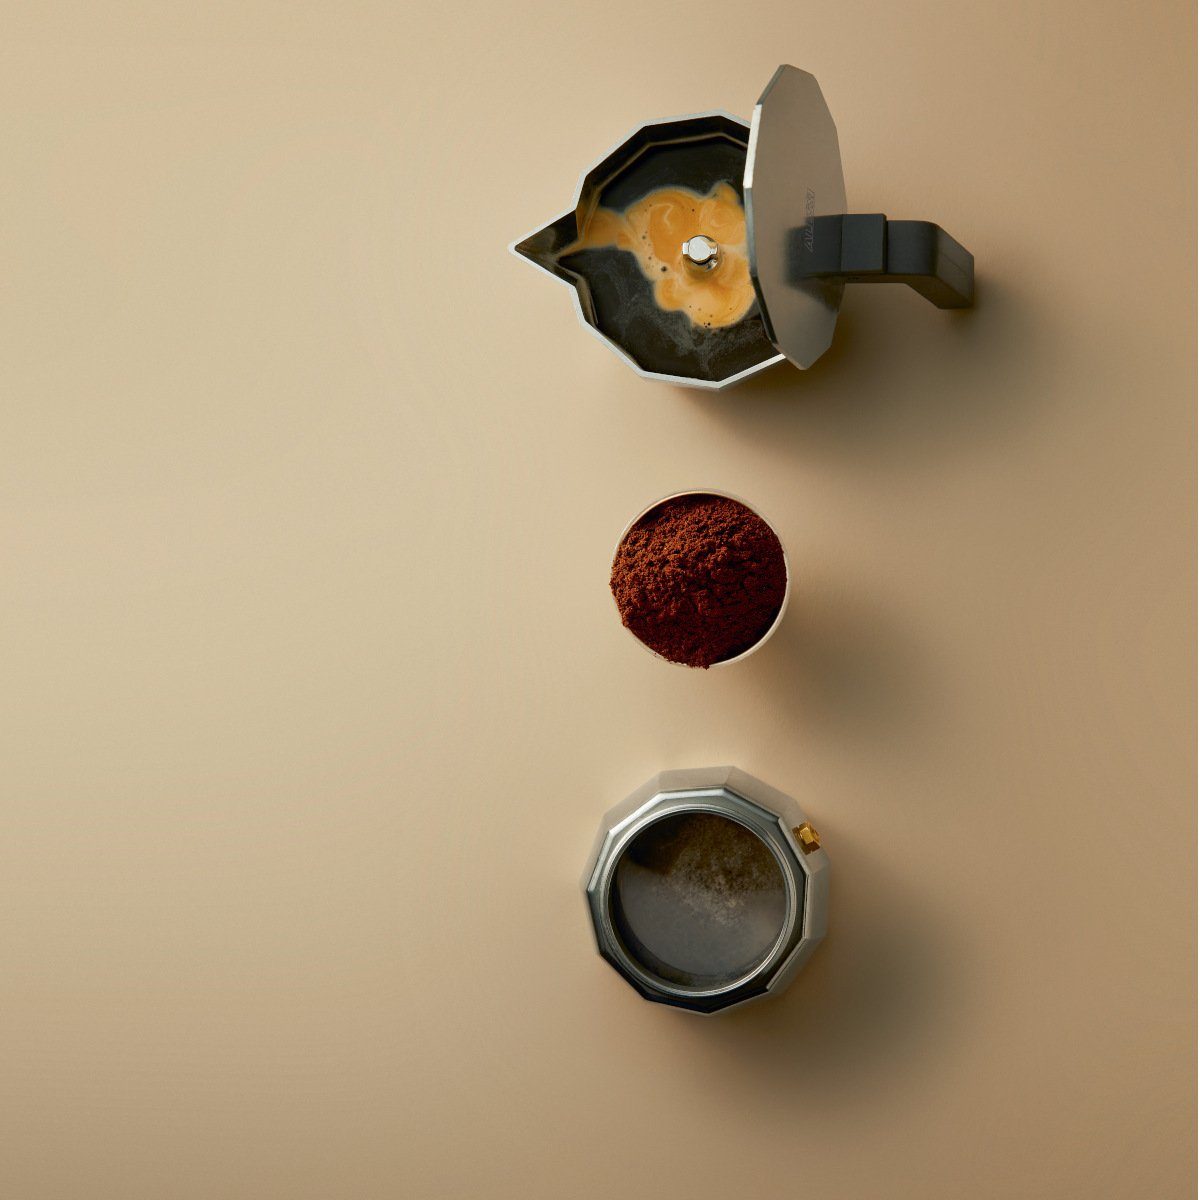 9, 0.45l MOKA Induktion für modern Kaffeekanne, Espressokocher Auch geeignet Espressokocher Alessi